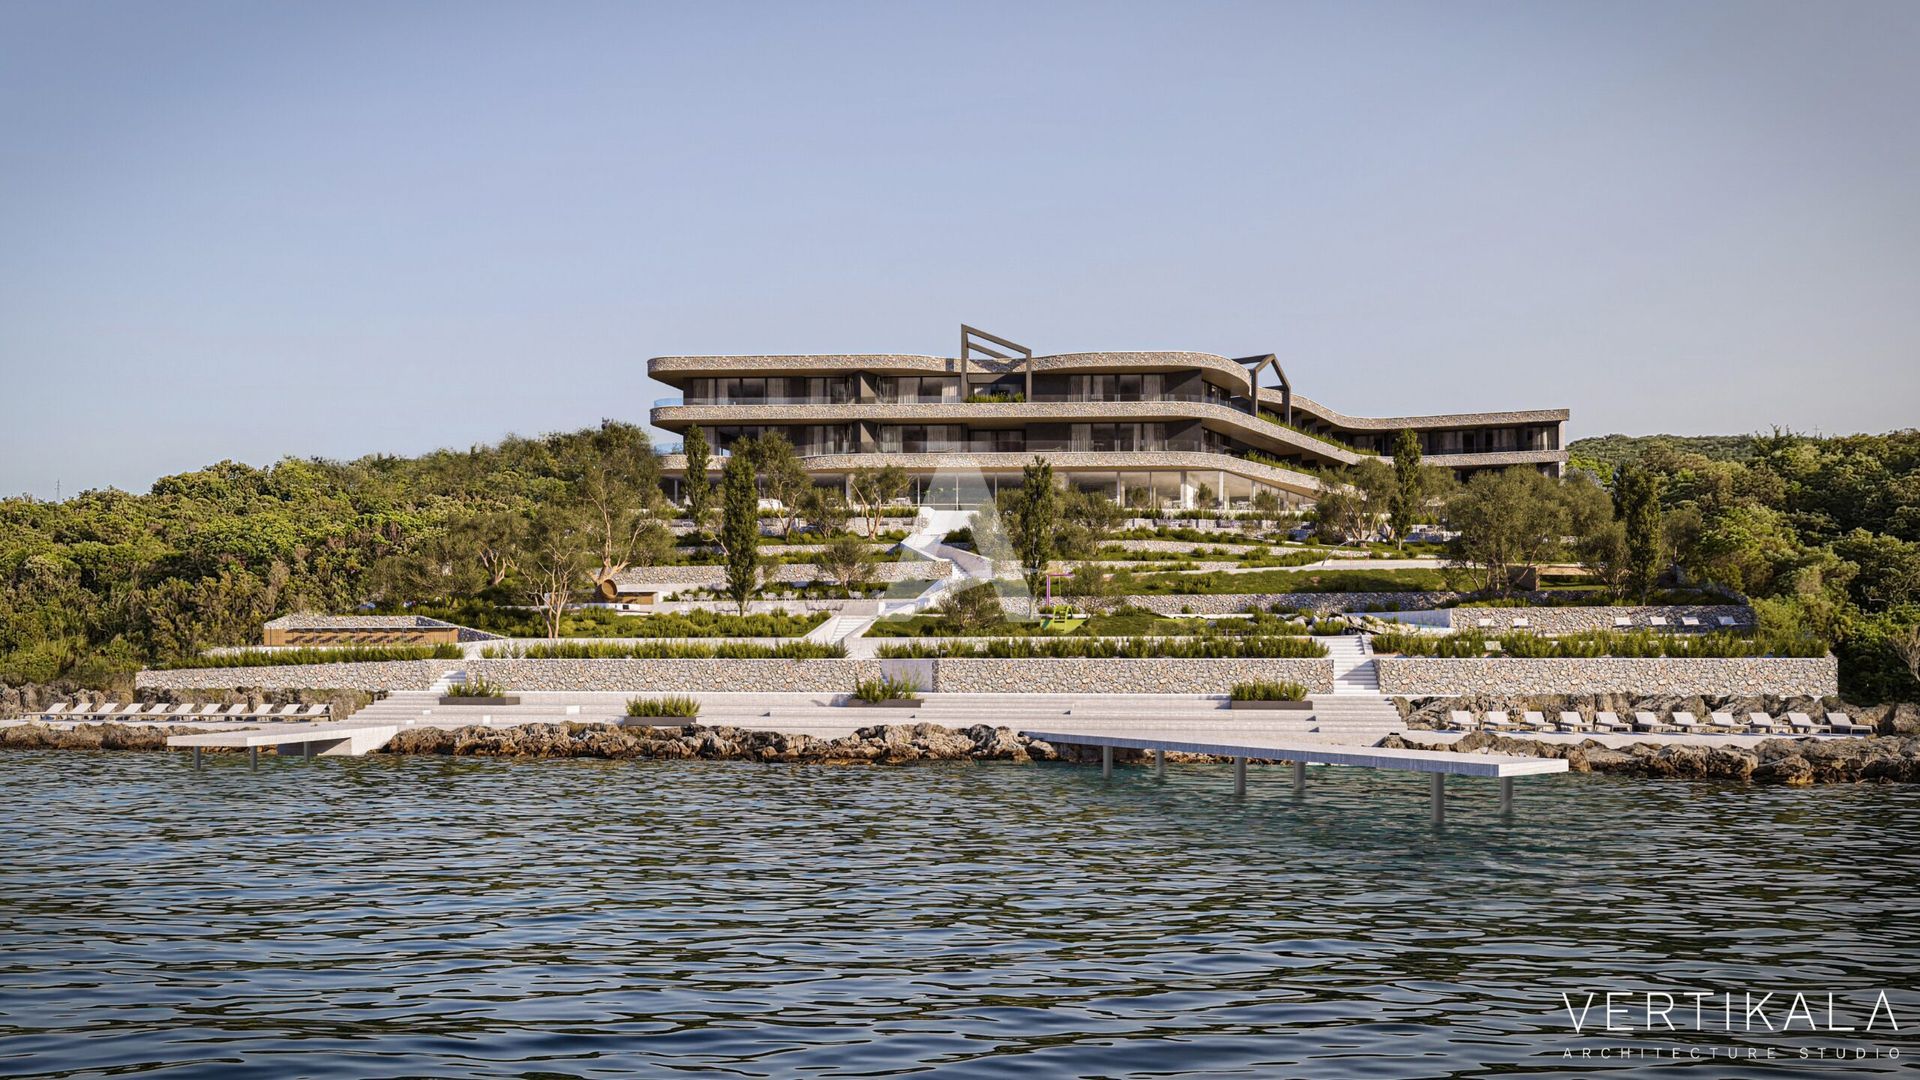 amforaproperty.com/Zemljište na obali Bokokotorskog zaliva Luštica,sa gotovim projektom hotela sa 5 zvezdica